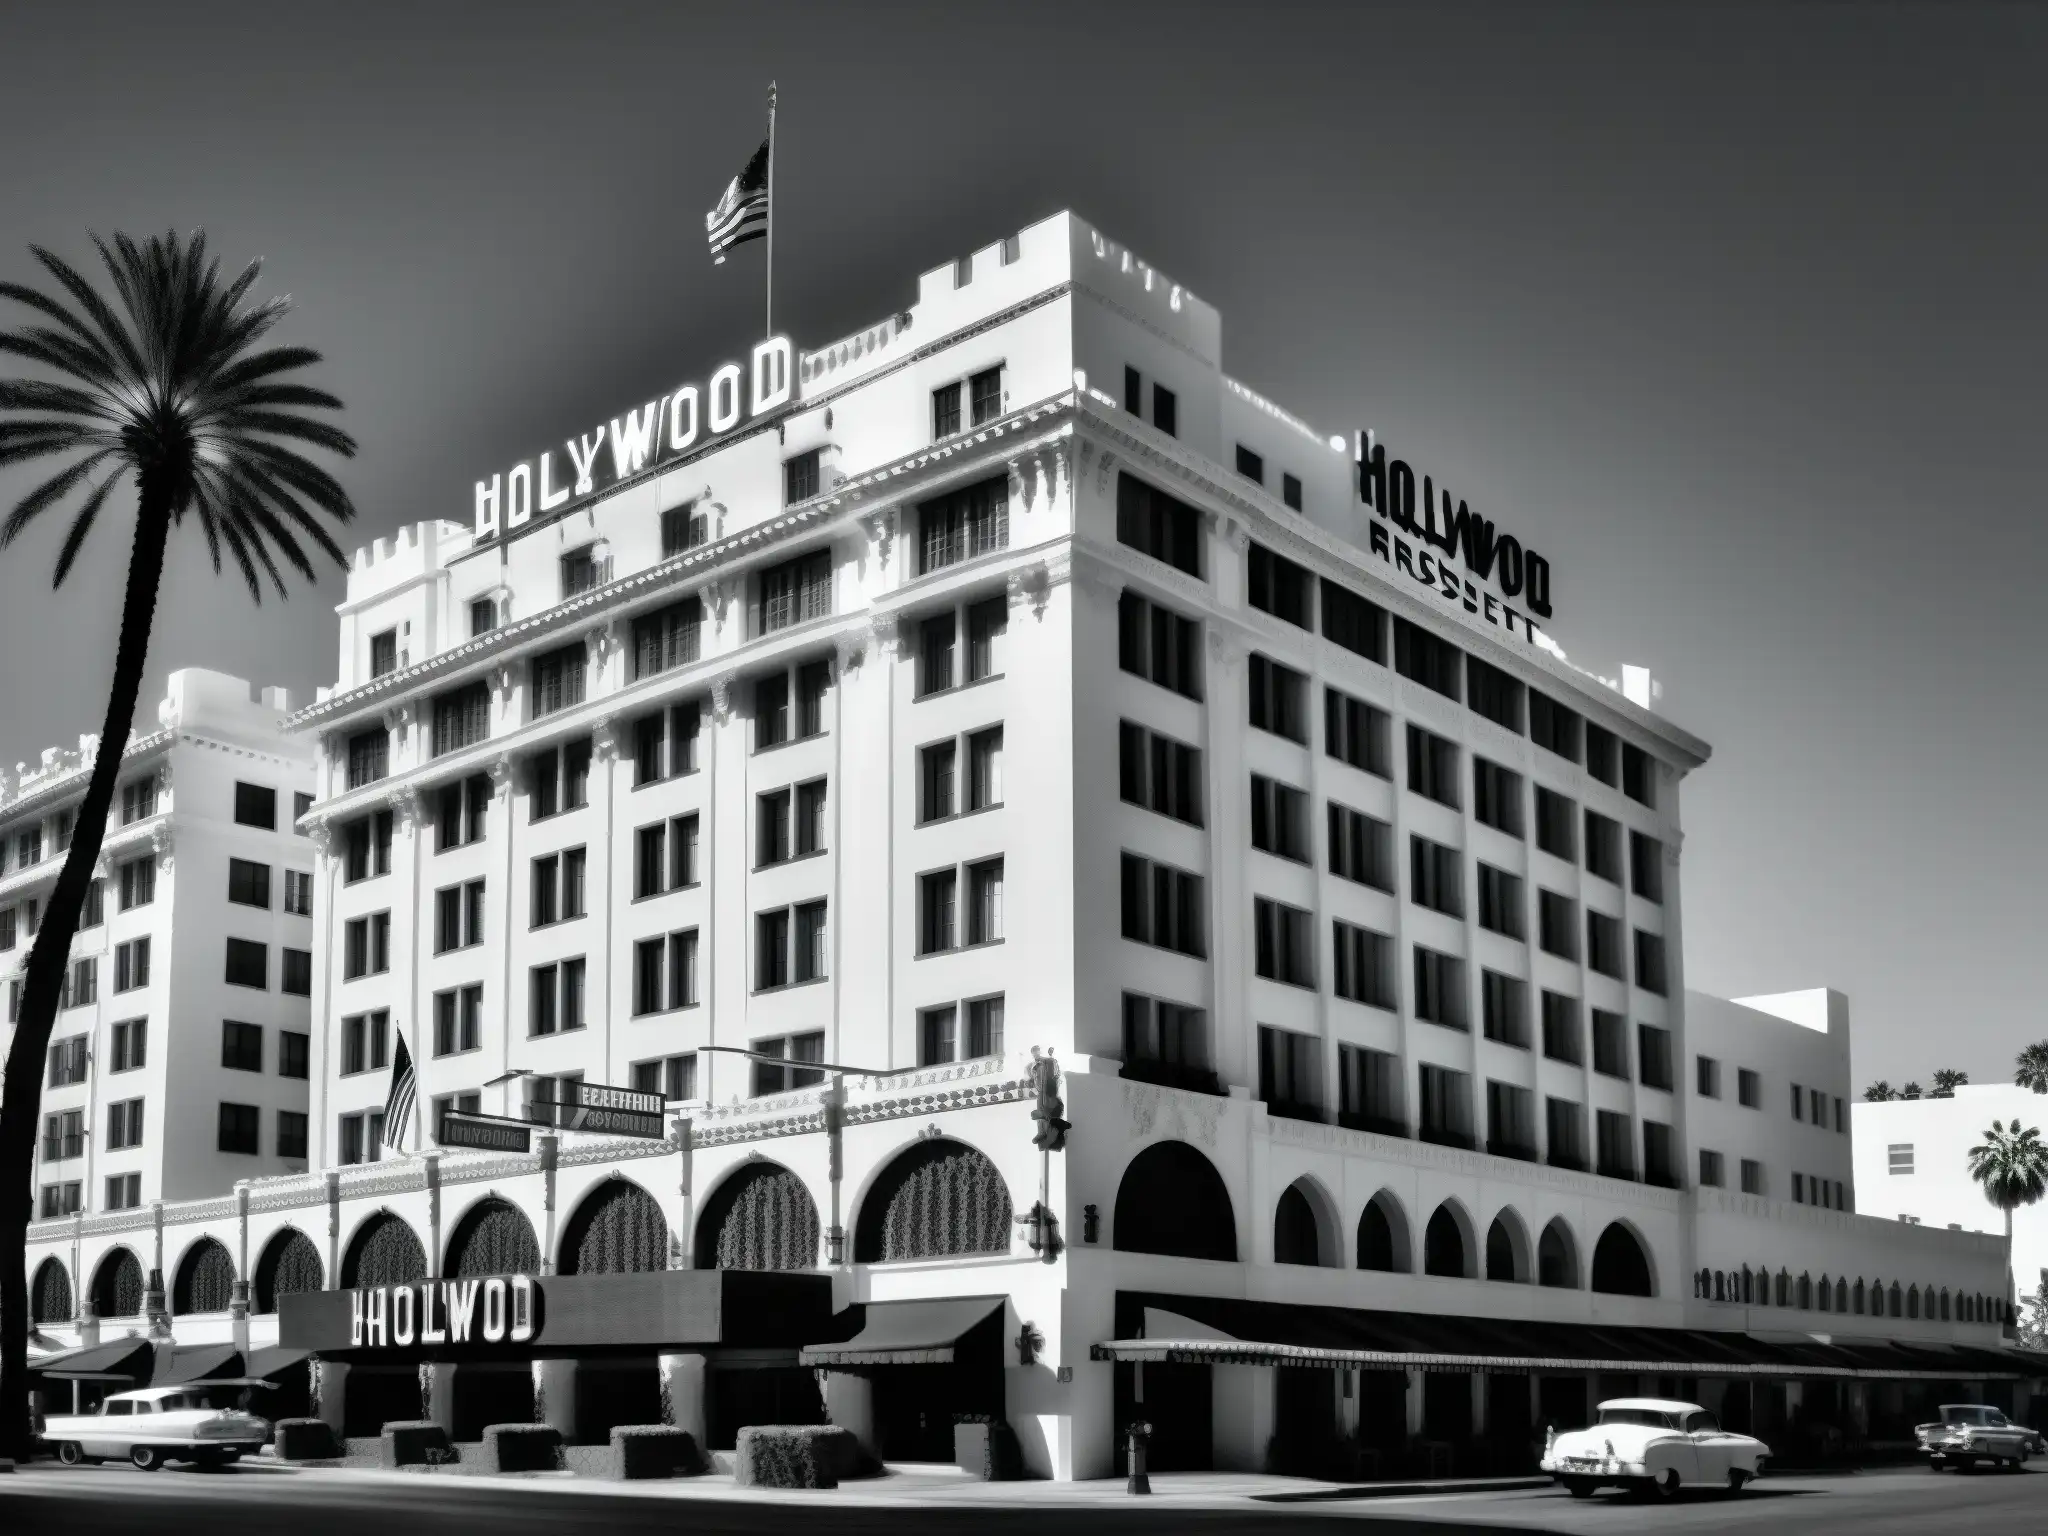 Imponente fachada del Hotel Hollywood Roosevelt en blanco y negro, con misterio y encanto en las calles de Hollywood